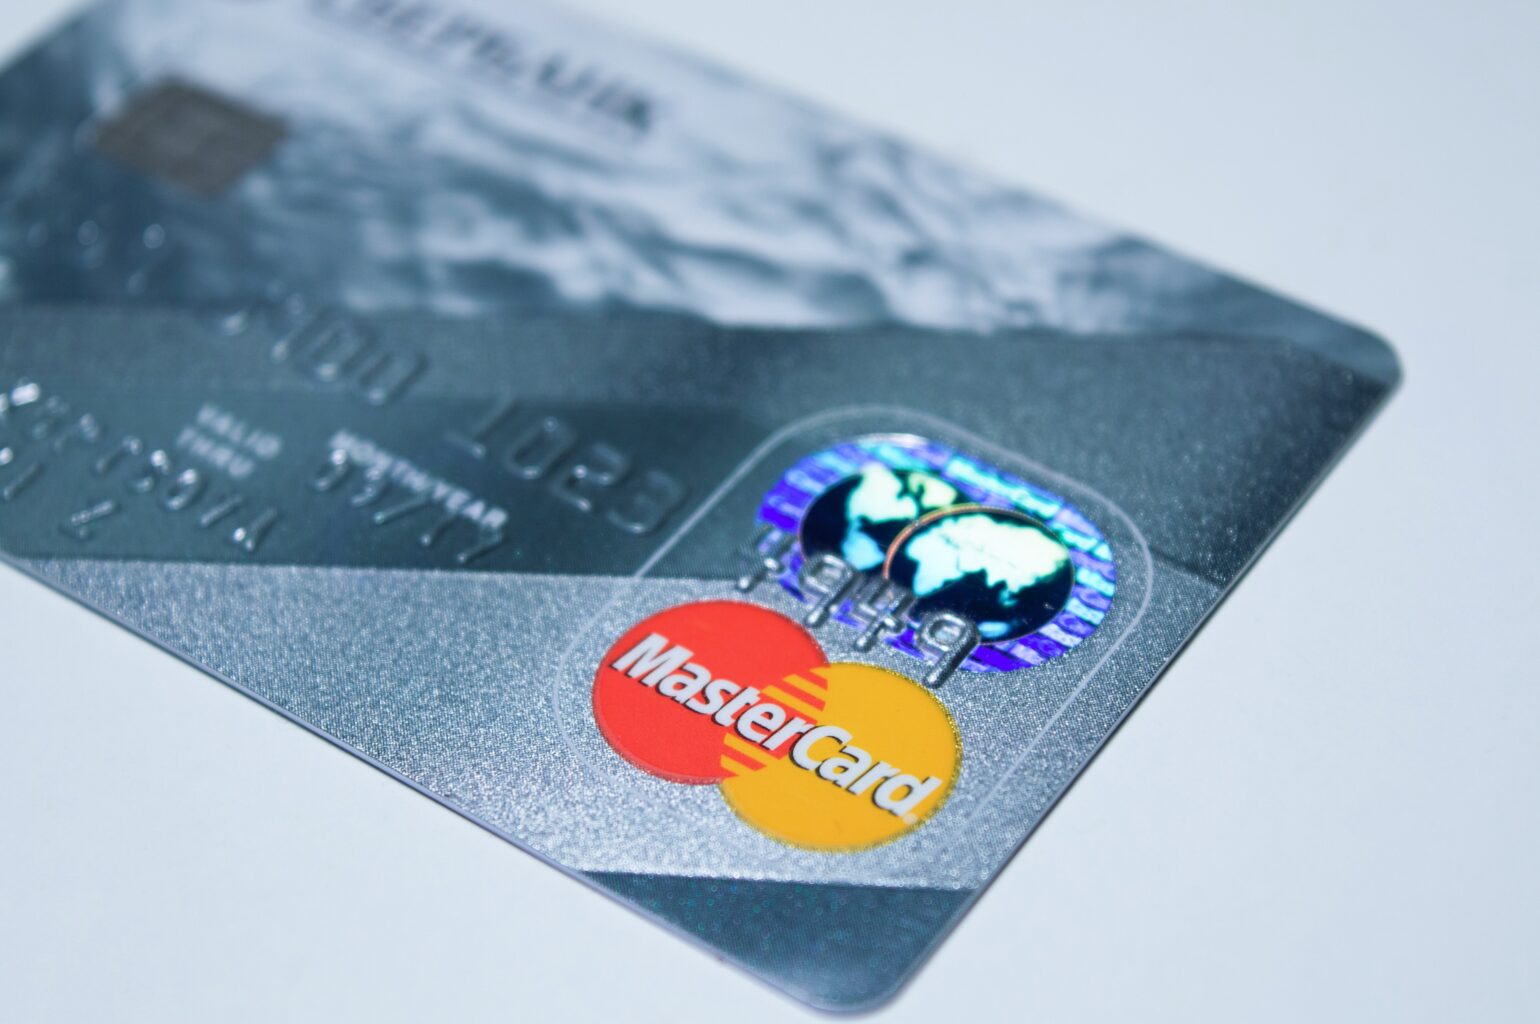 Pagar boleto com cartão de crédito vale a pena? Saiba mais